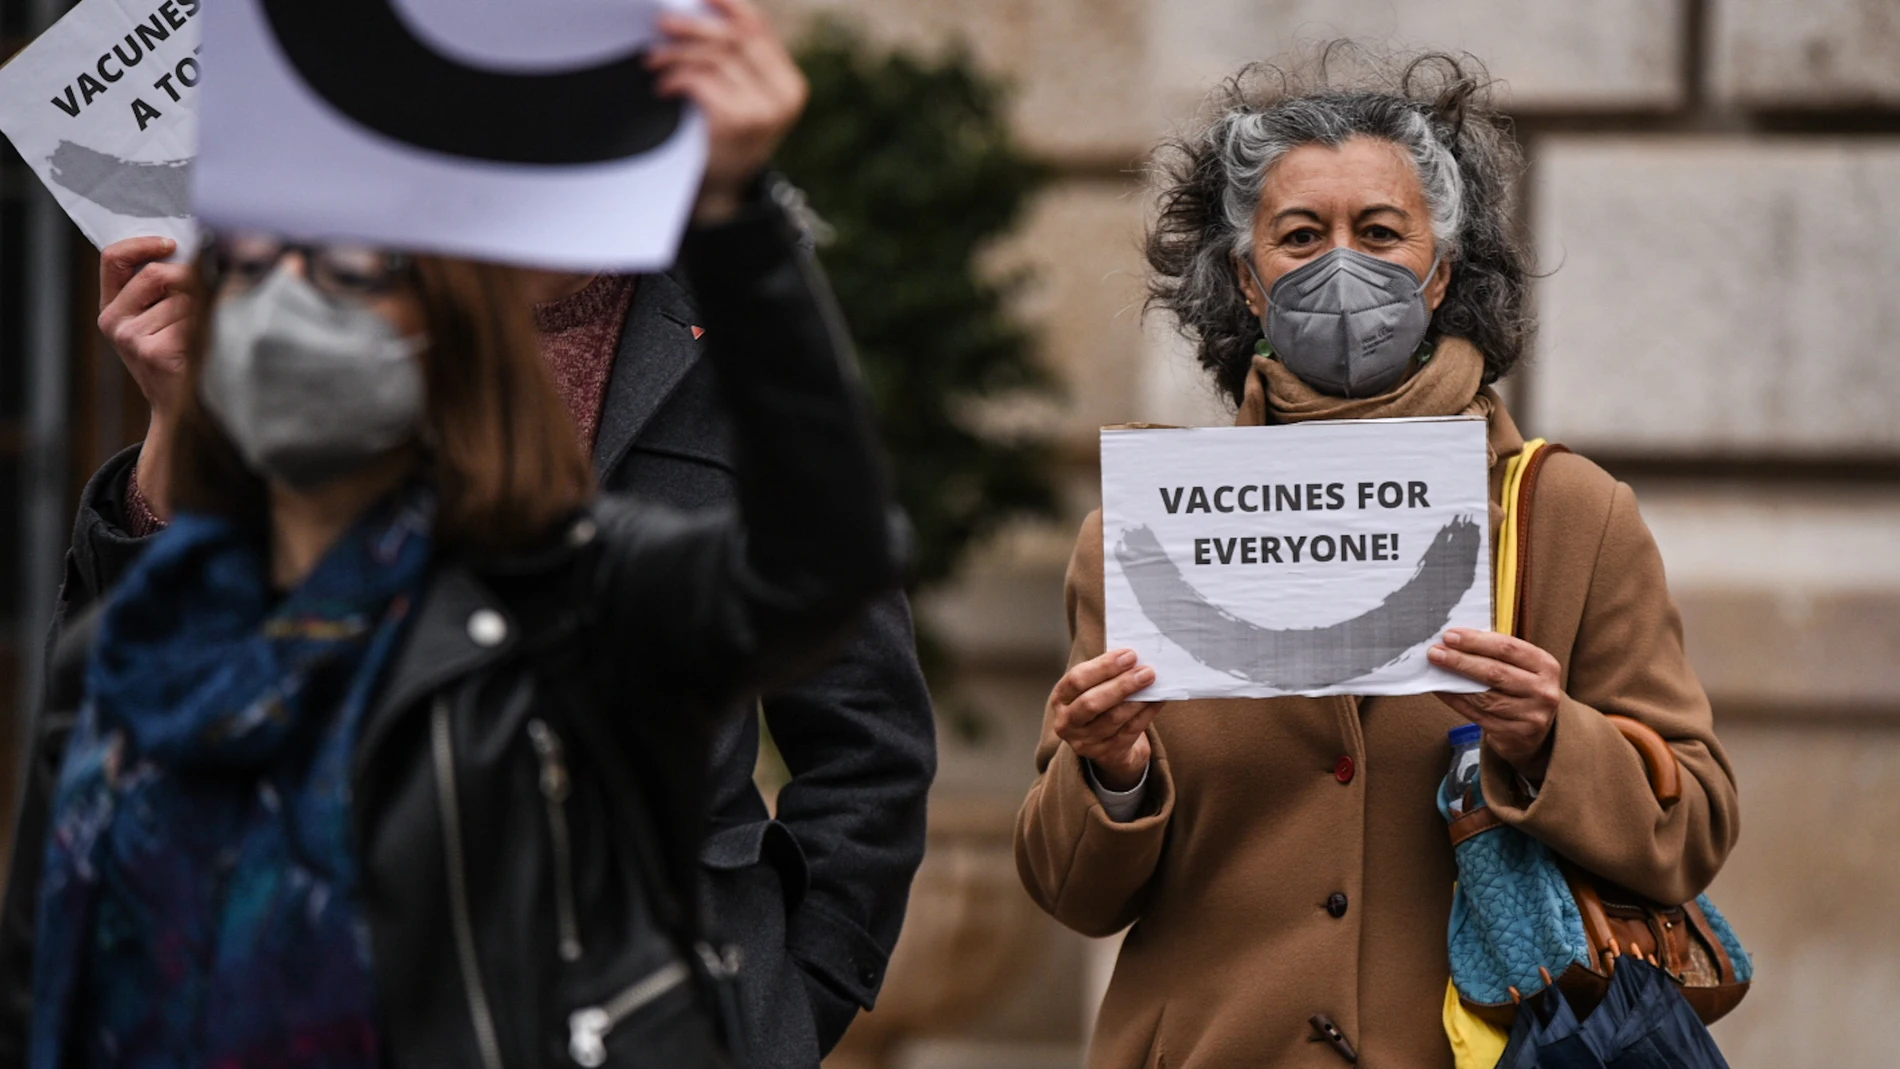 Una mujer sostiene un cartel donde se lee “Vaccines for Everyone!” durante una manifestación que reclama la liberación de las patentes de las vacunas para el Covid-19 en Valencia el pasado mes de abril